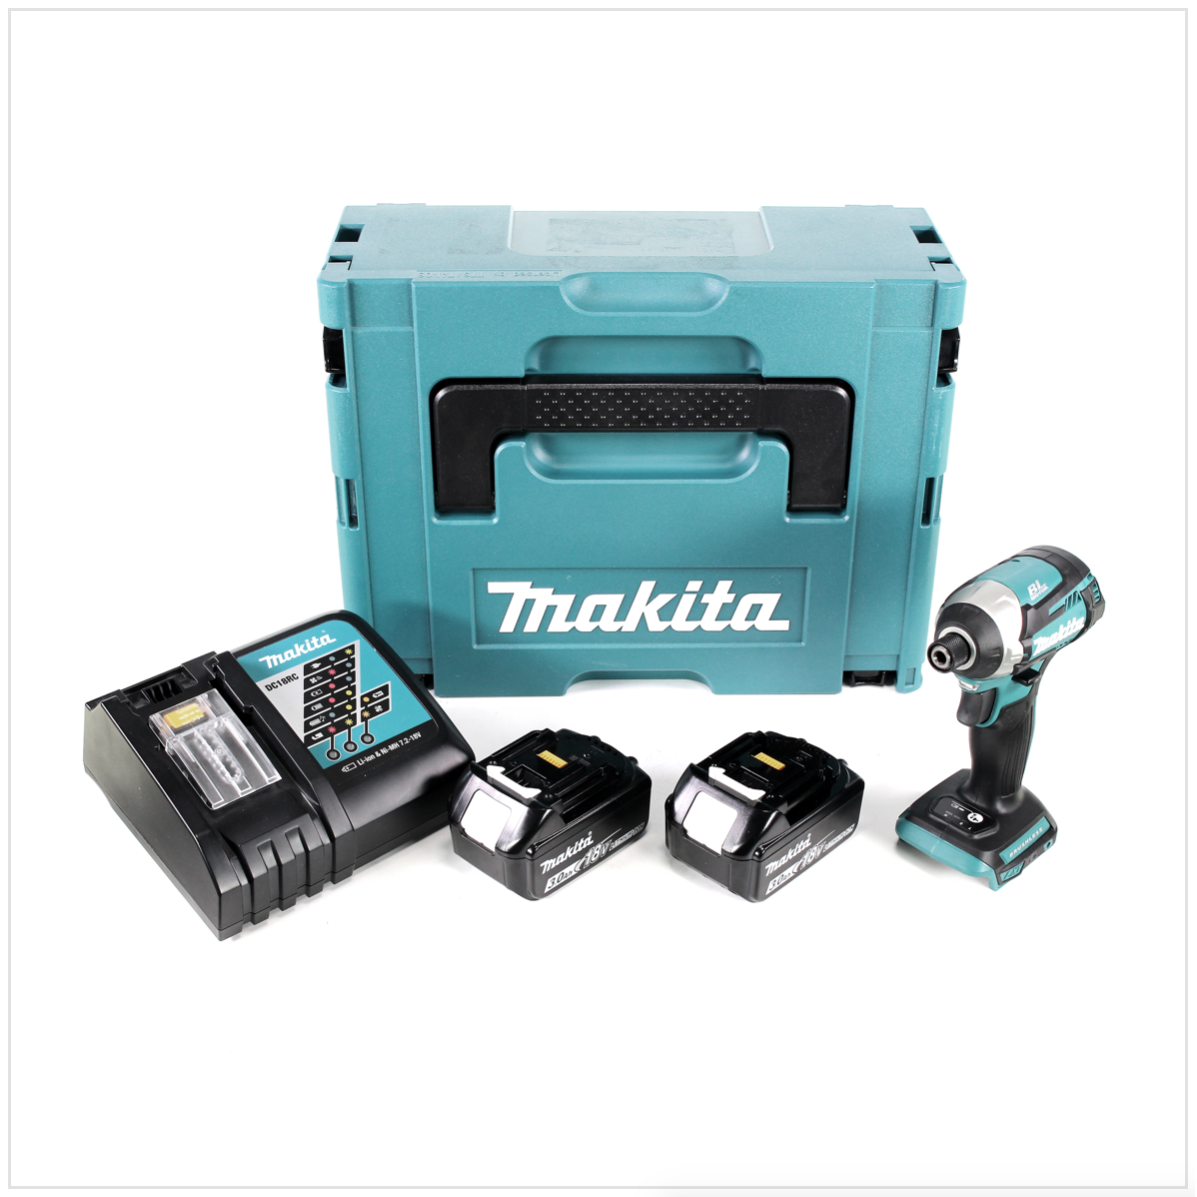 Makita DTD 154 RFJ 18 V Li-Ion Visseuse à chocs sans fil avec boîtier MakPac + 2x Batteries BL1830 3,0 Ah + Chargeur rapide DC18RC 0